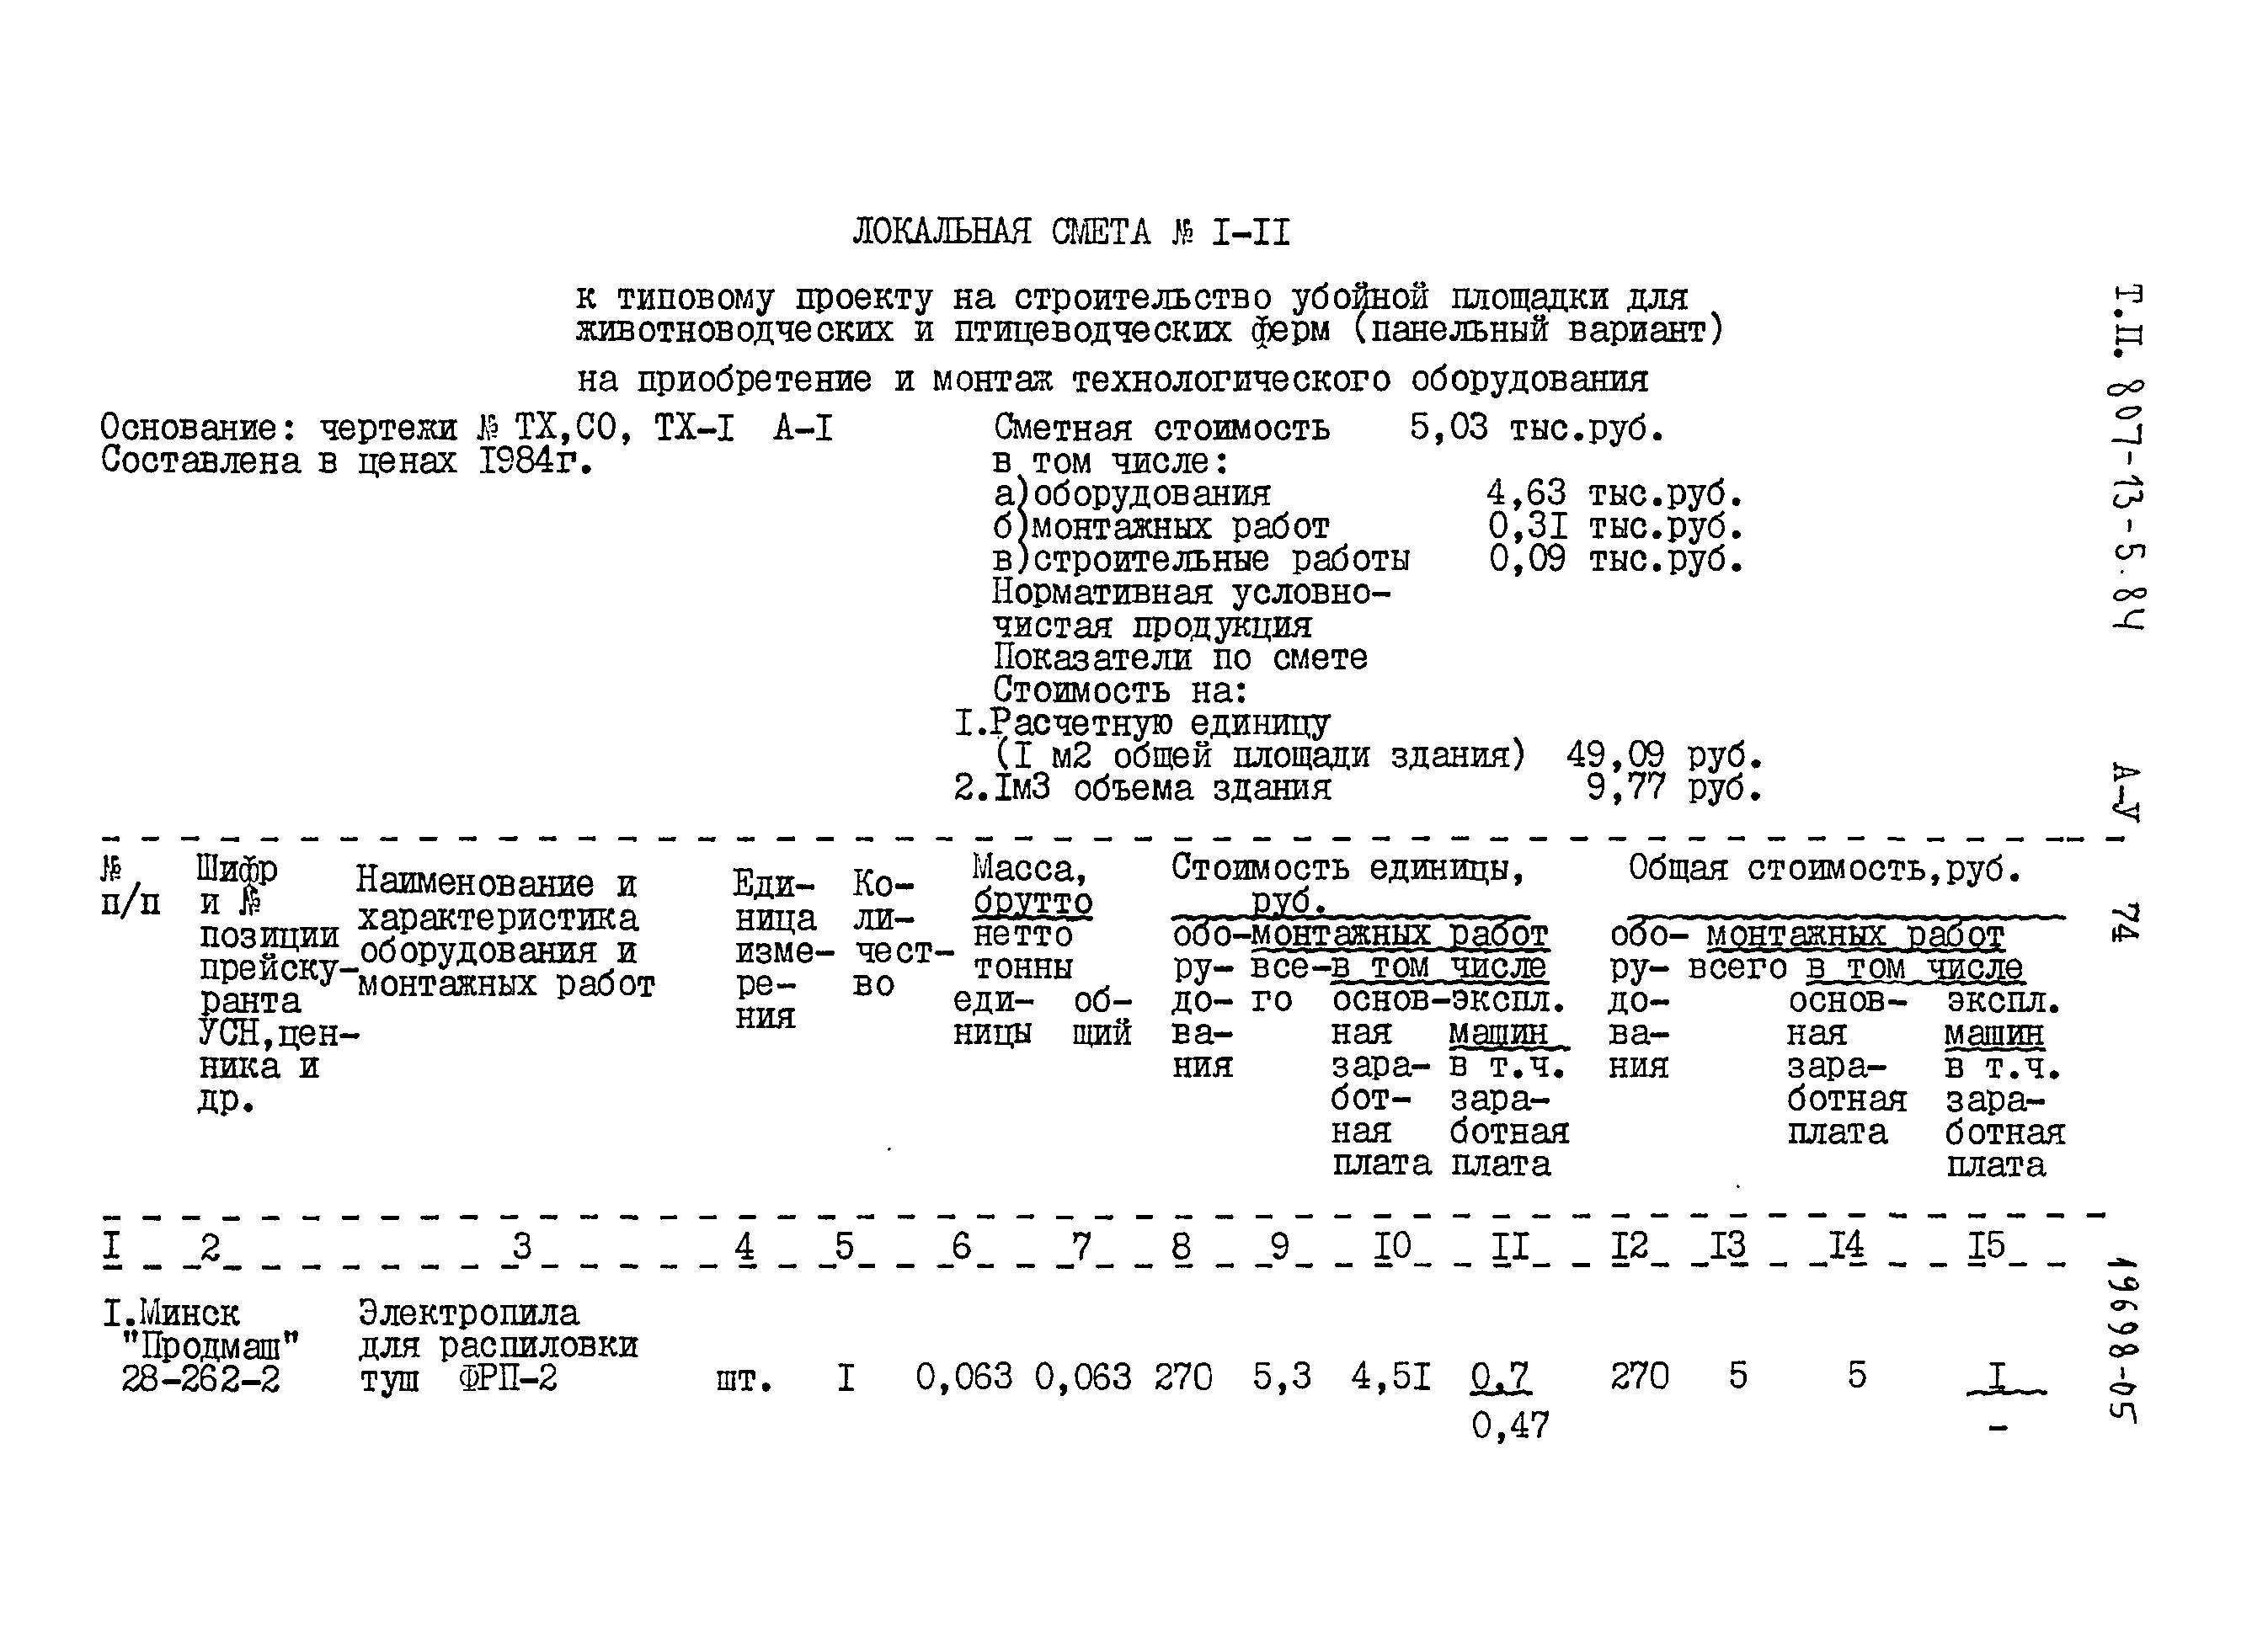 Типовой проект 807-13-5.84